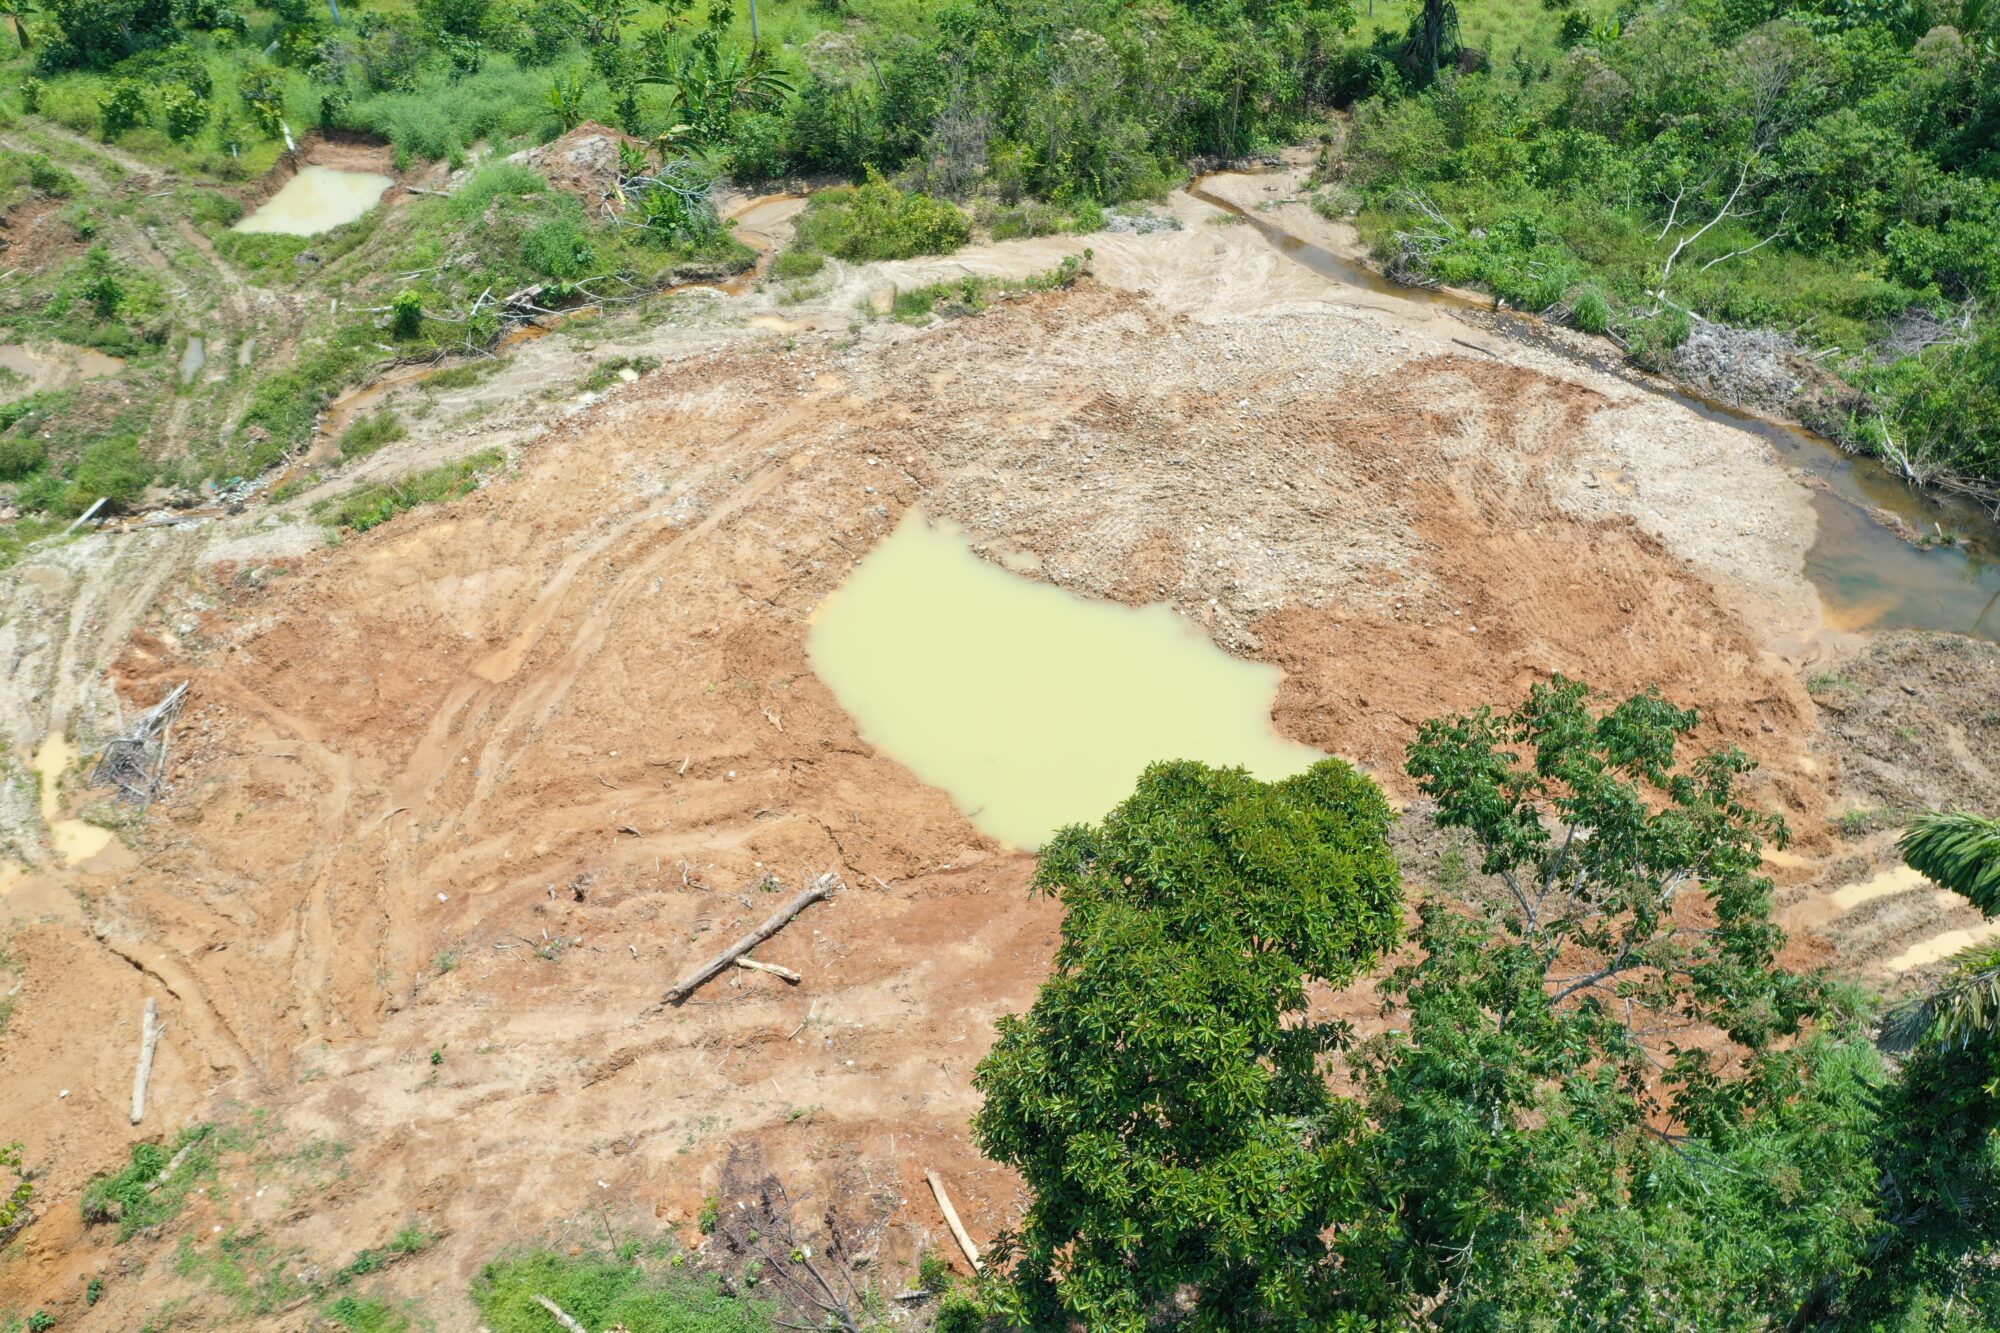 المياه الملوثة والدمار في موقع تعدين غير قانوني في أهوانو بمقاطعة نابو في الإكوادور